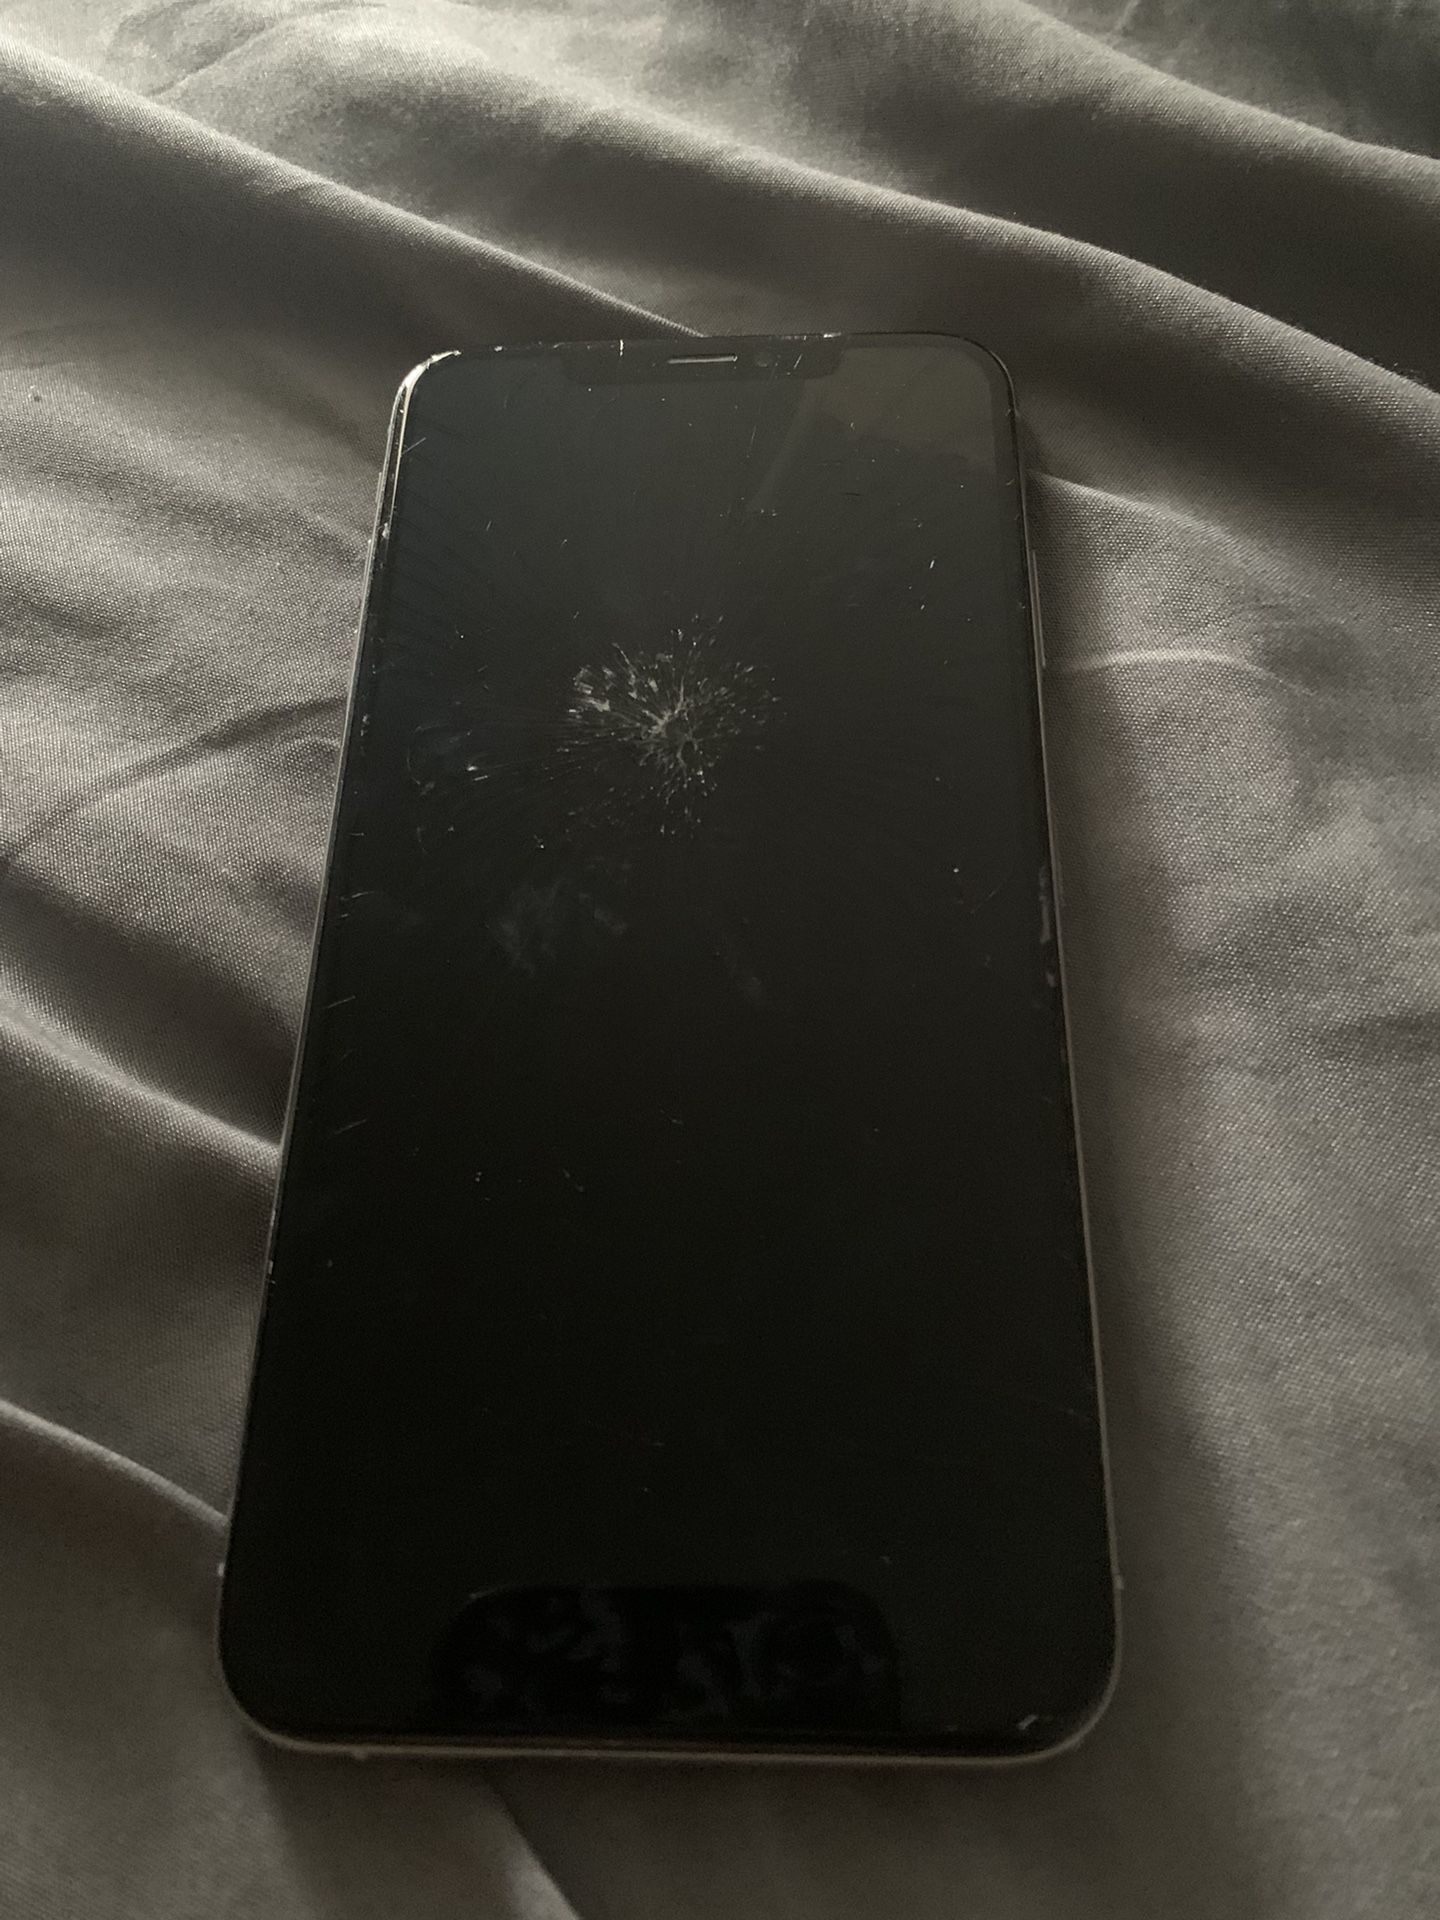 Broken iphone x